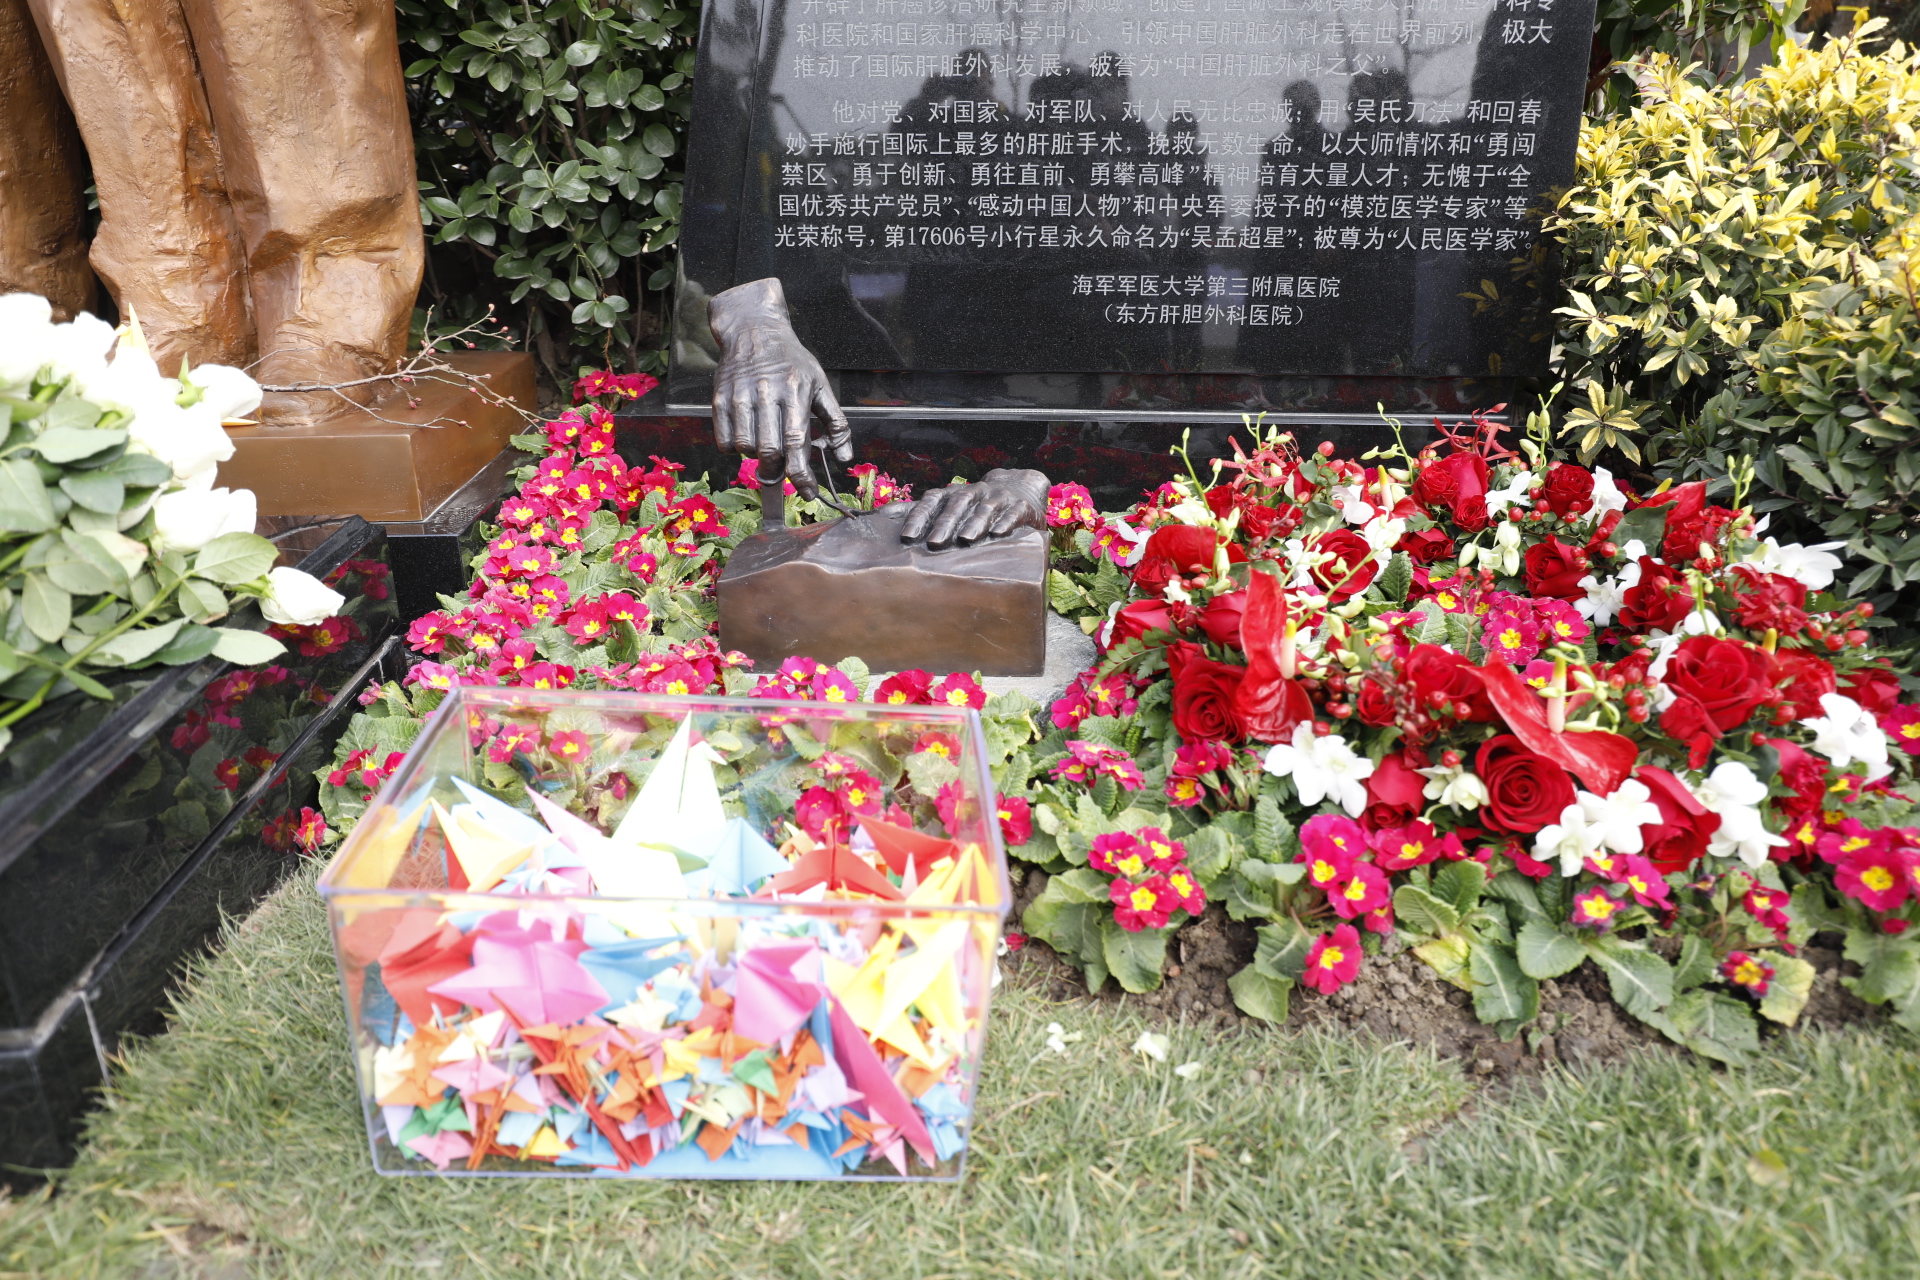 追忆国家的大夫吧！吴孟超院士和其夫人吴佩璋教授的埋葬仪式在上海举行。